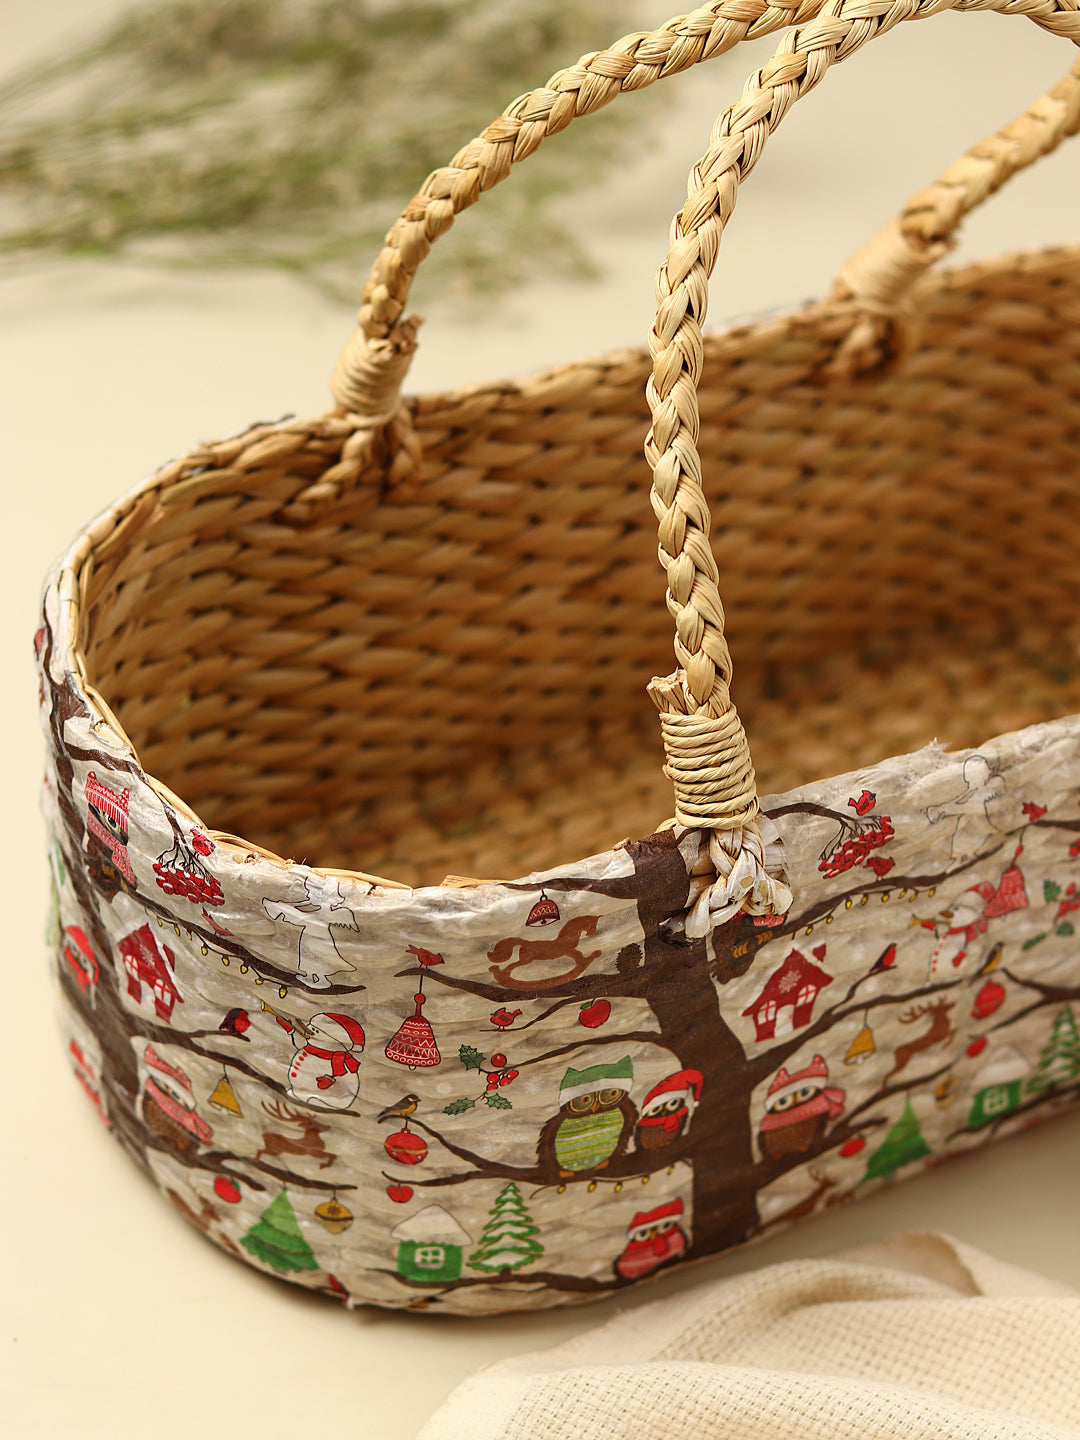  Seagrass Hamper Basket